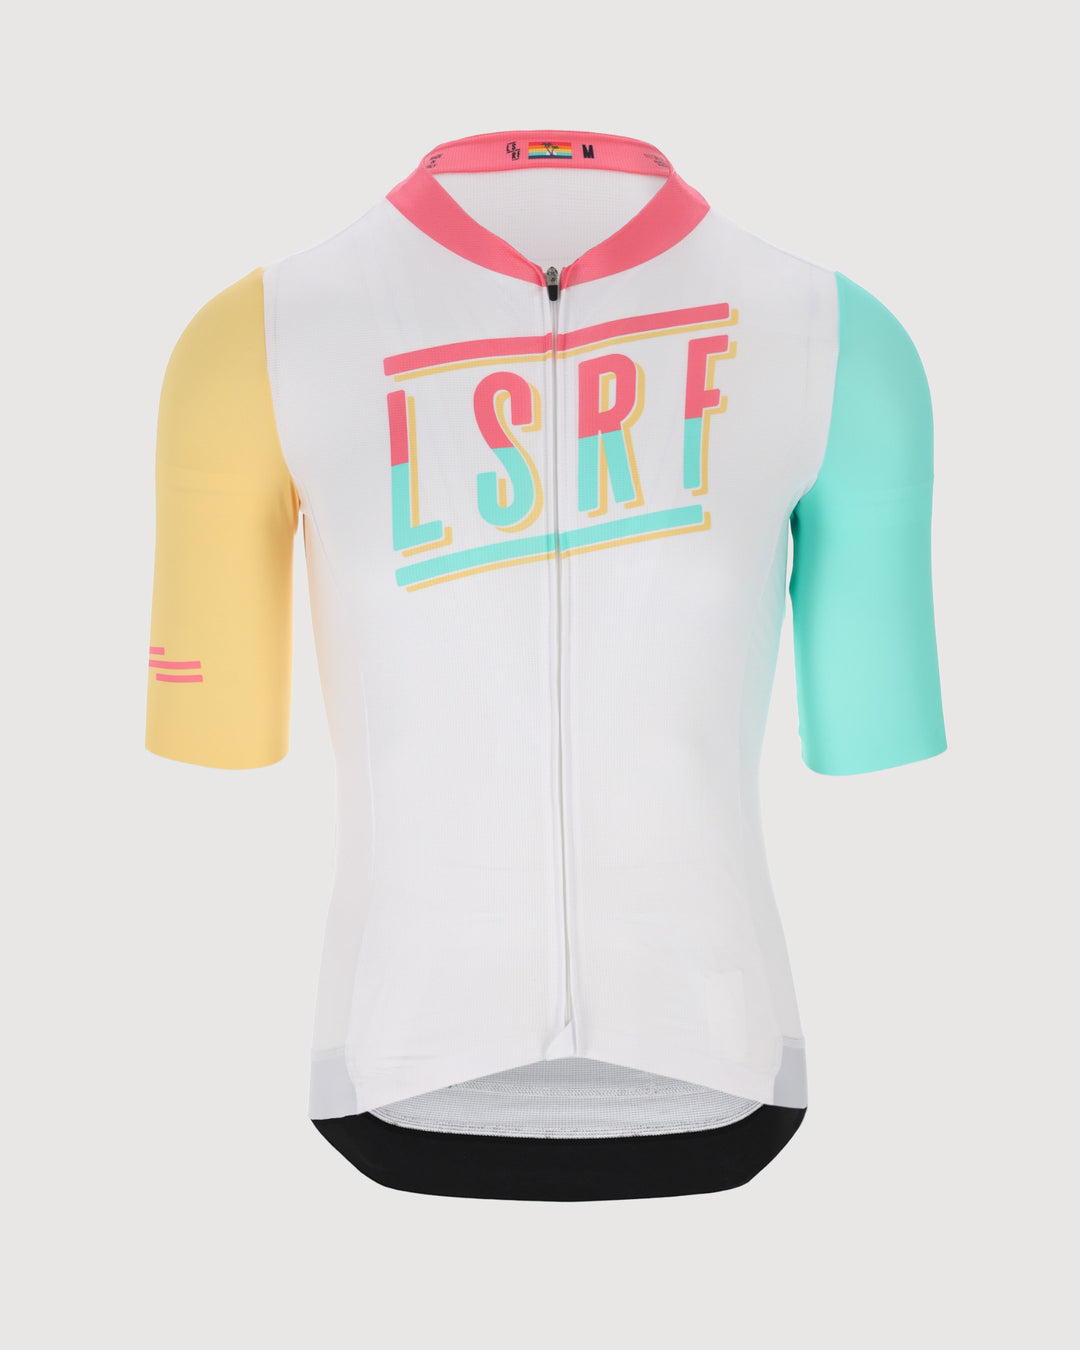 Cycling race jersey La Jolla LSRF 2024